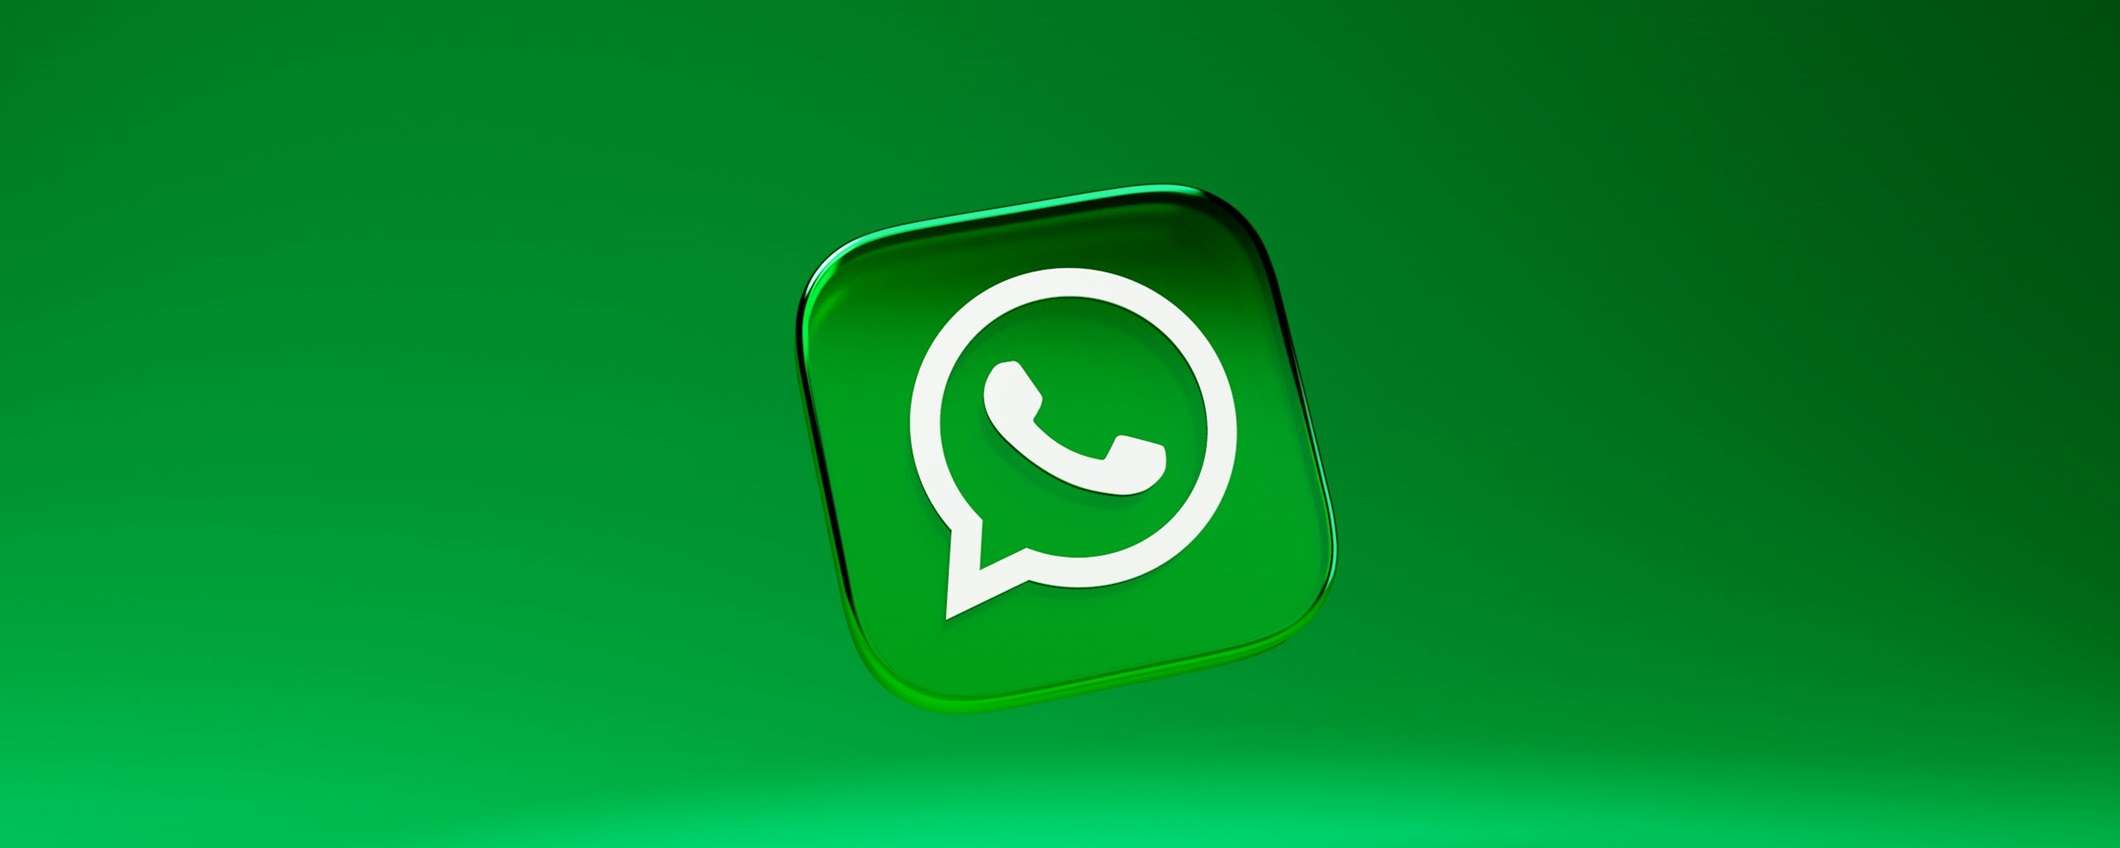 WhatsApp: come riconoscere le truffe online ed evitare di caderci